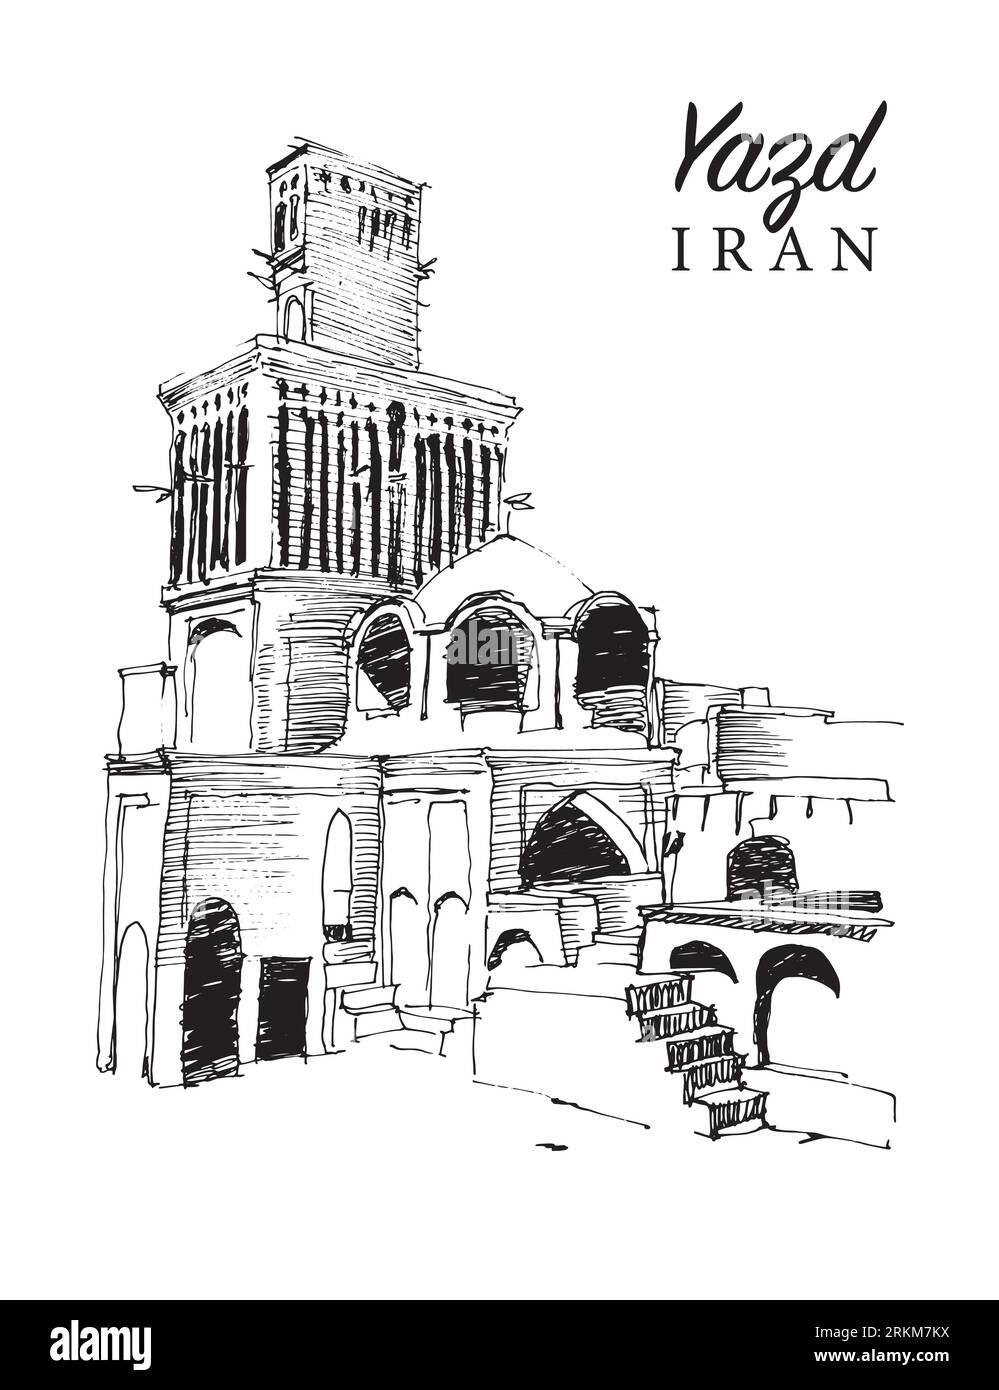 Illustration de croquis dessiné à la main de vecteur de la ville de Yazd en Iran, célèbre pour ses tours de chasse-vent et son architecture unique. Banque D'Images